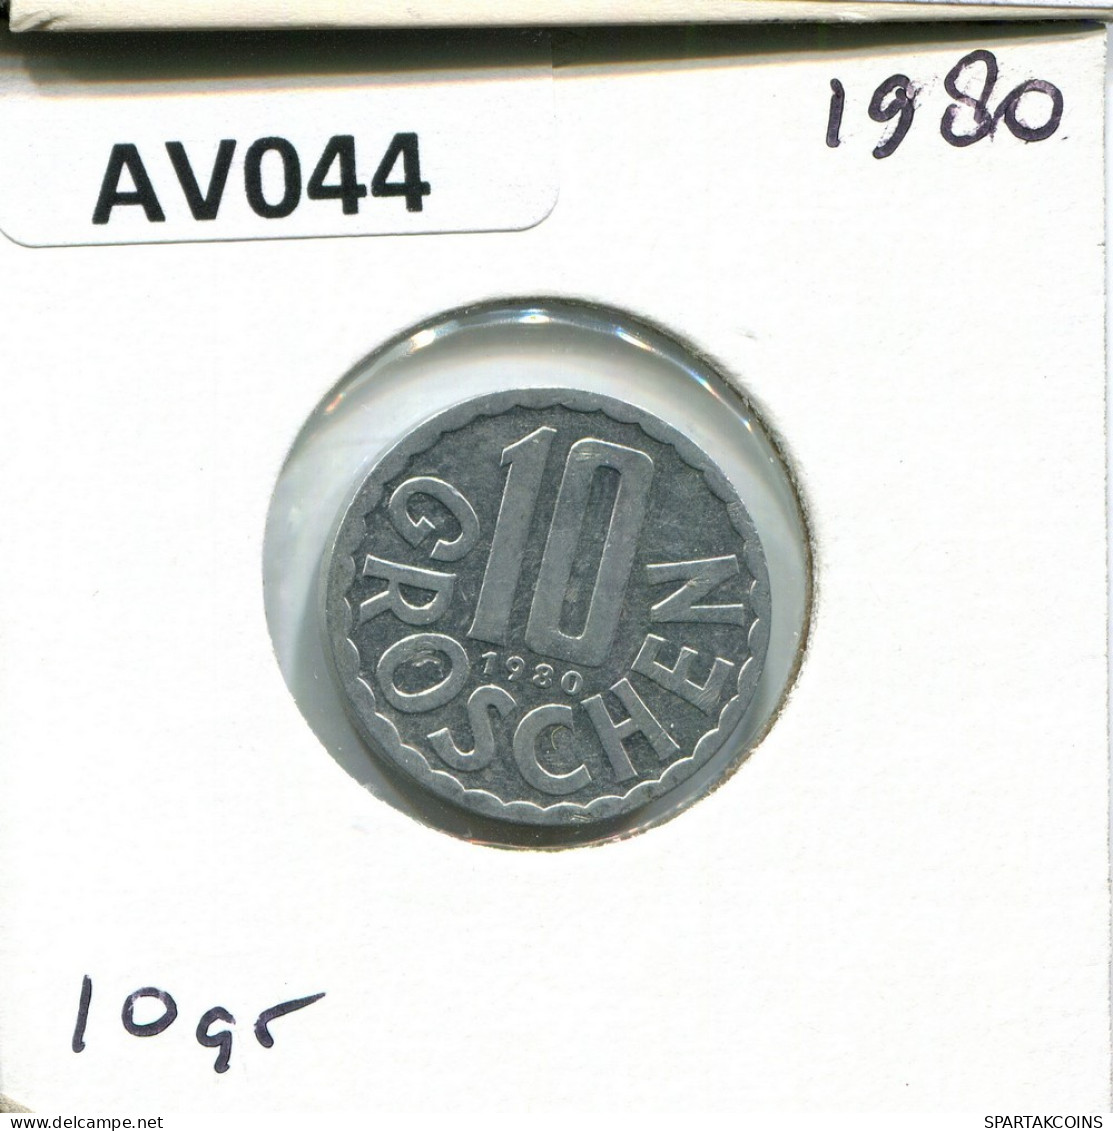 10 GROSCHEN 1980 AUSTRIA Moneda #AV044.E.A - Autriche